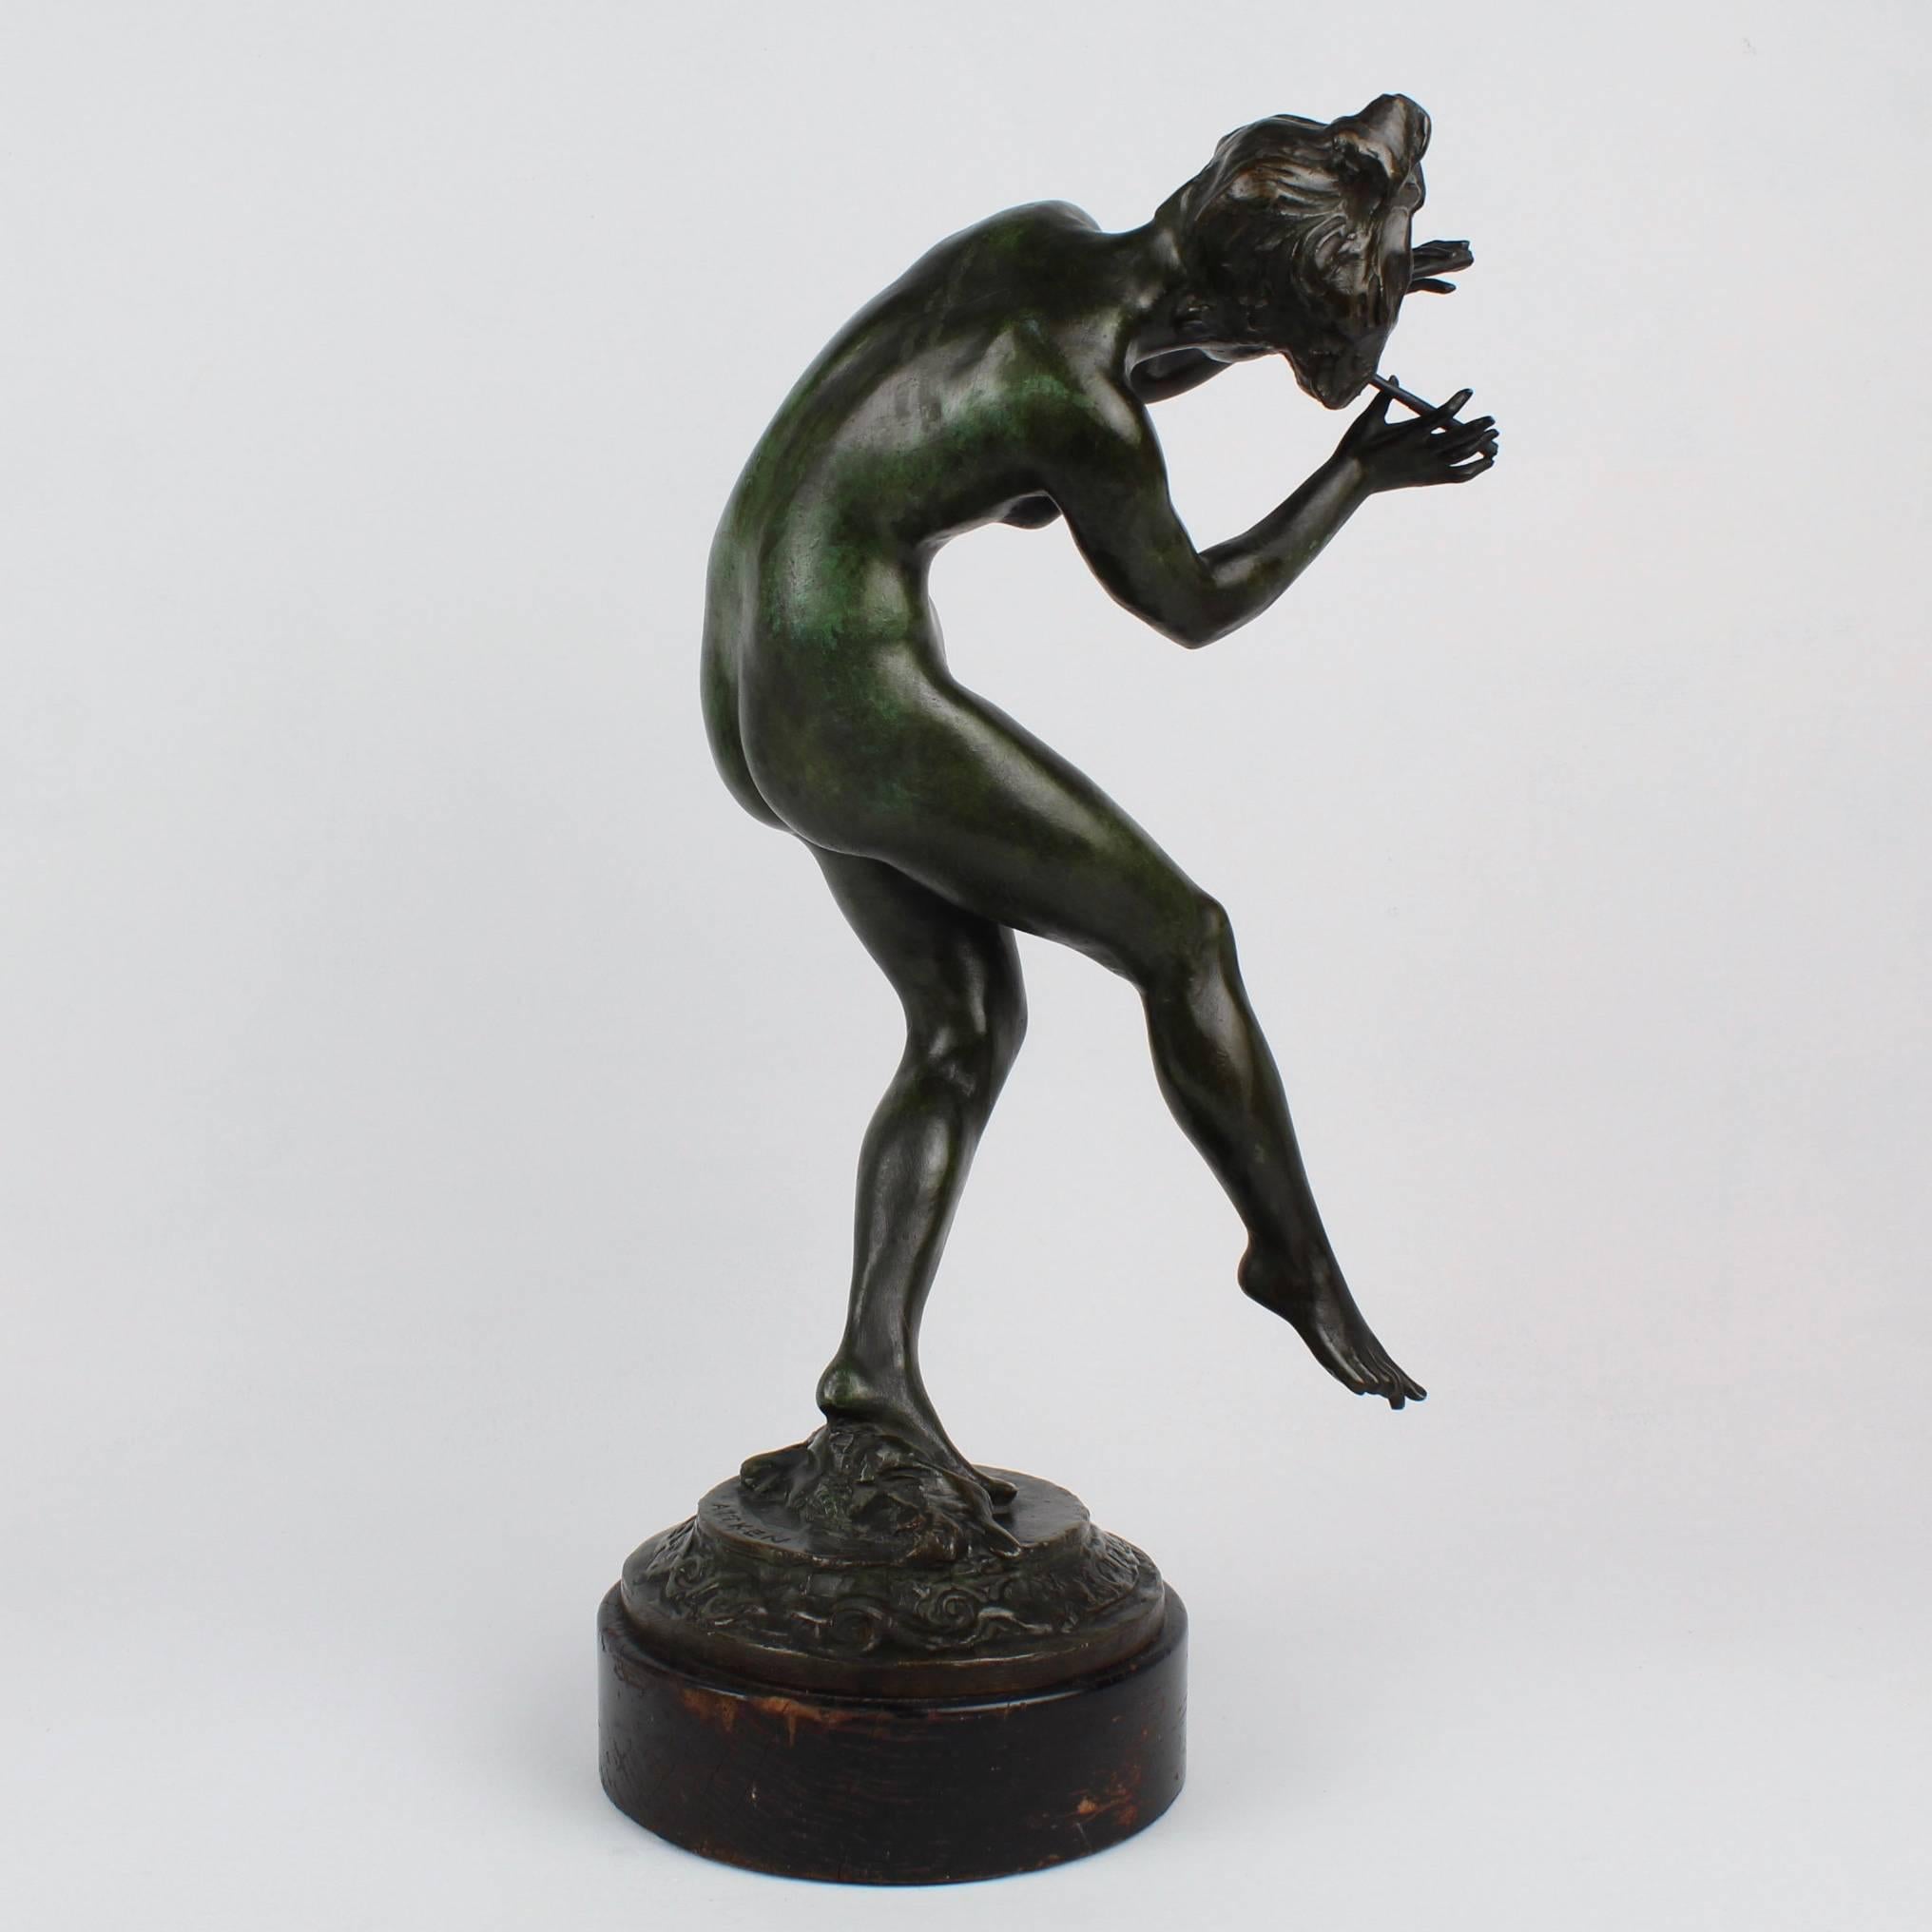 An American Art Nouveau bronze sculpture of 